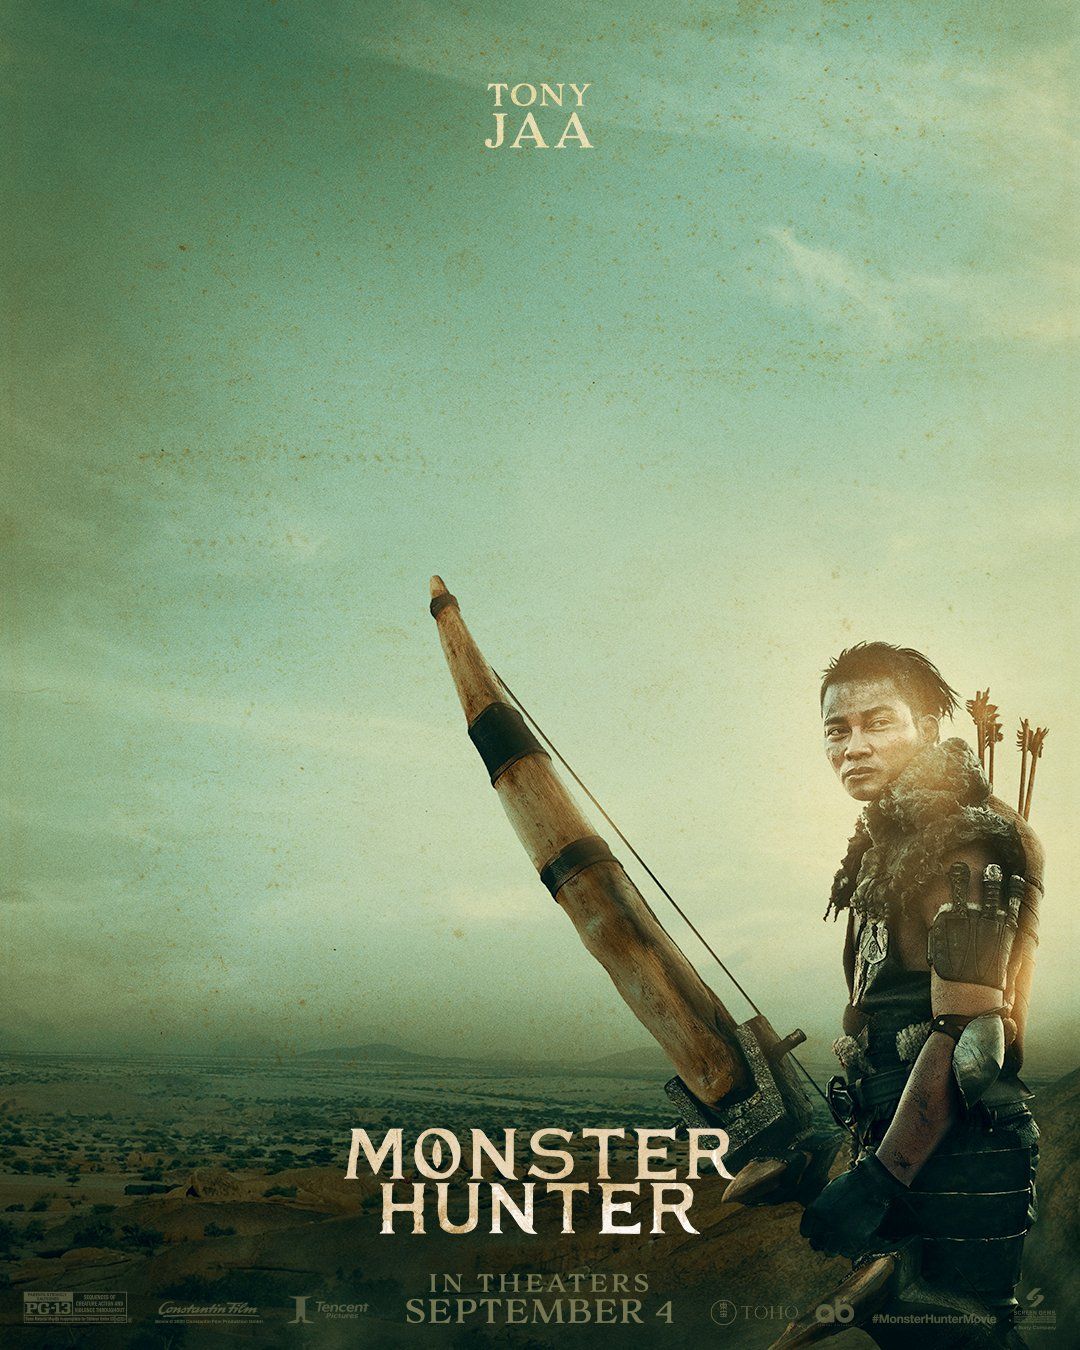 Monster Hunter, Tony Jaa